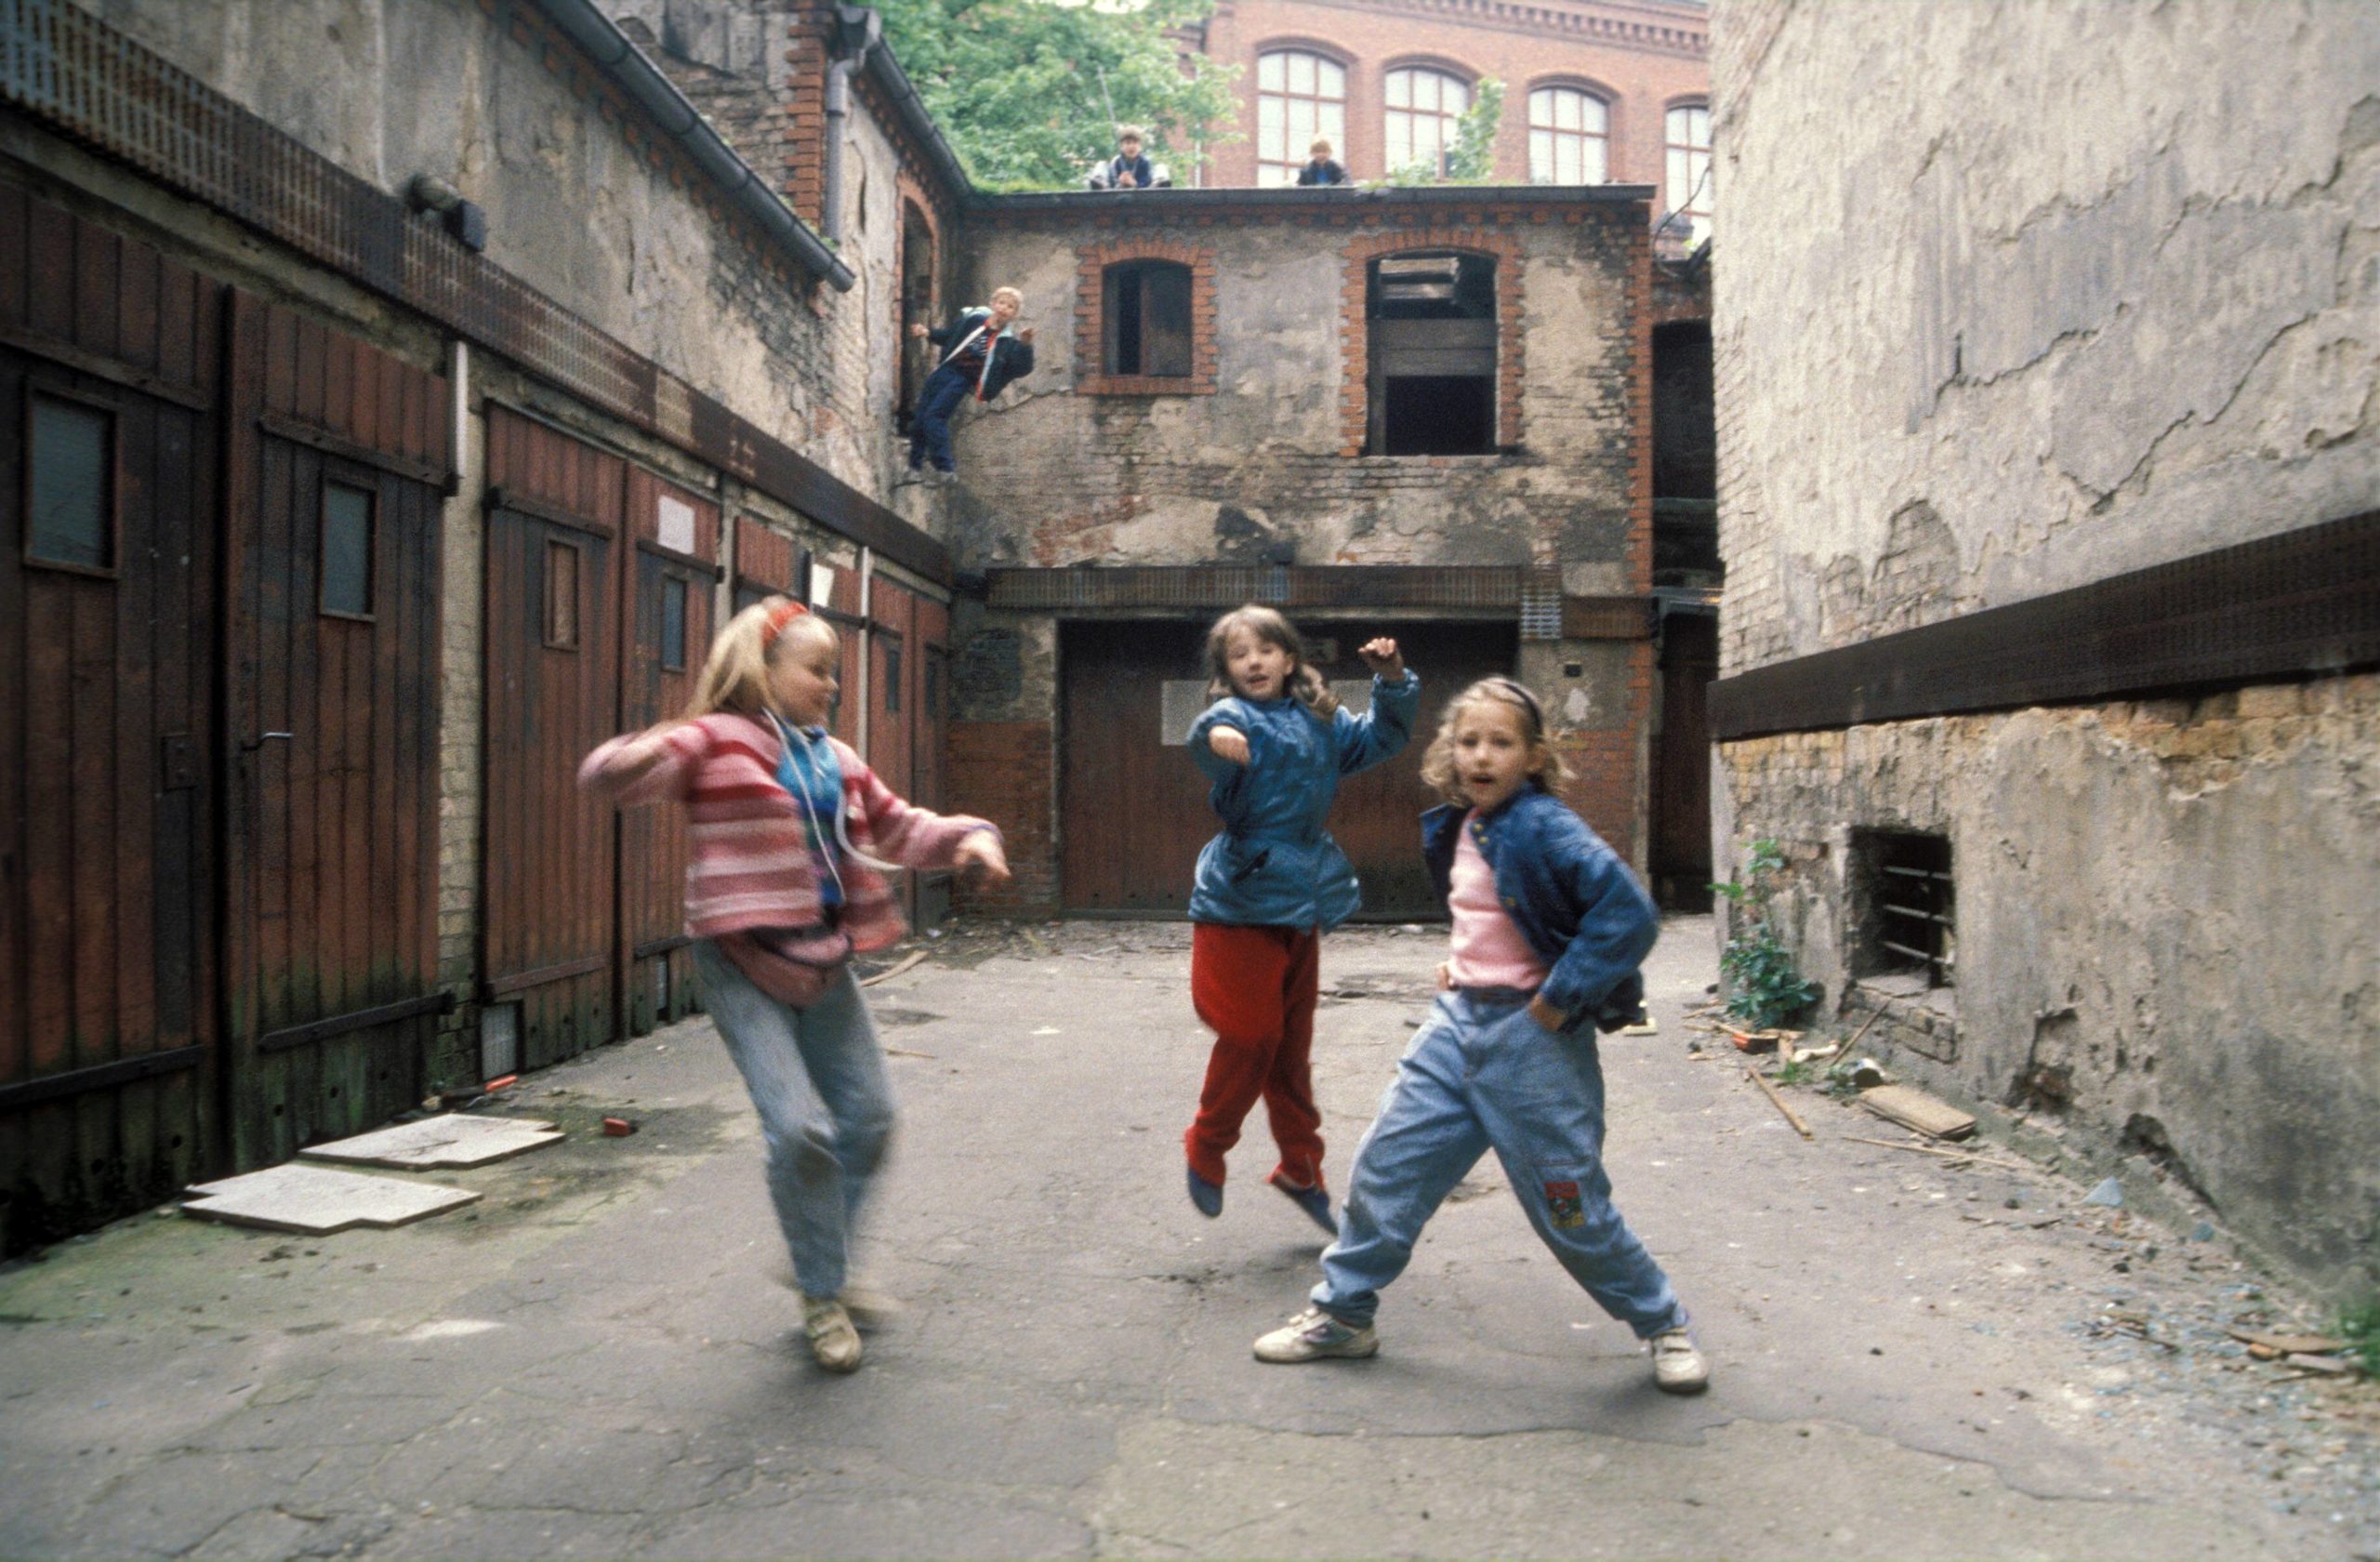 Kinder spielen in einem Hinterhof in Prenzlauer Berg. Foto: Imago/Werner Schulze